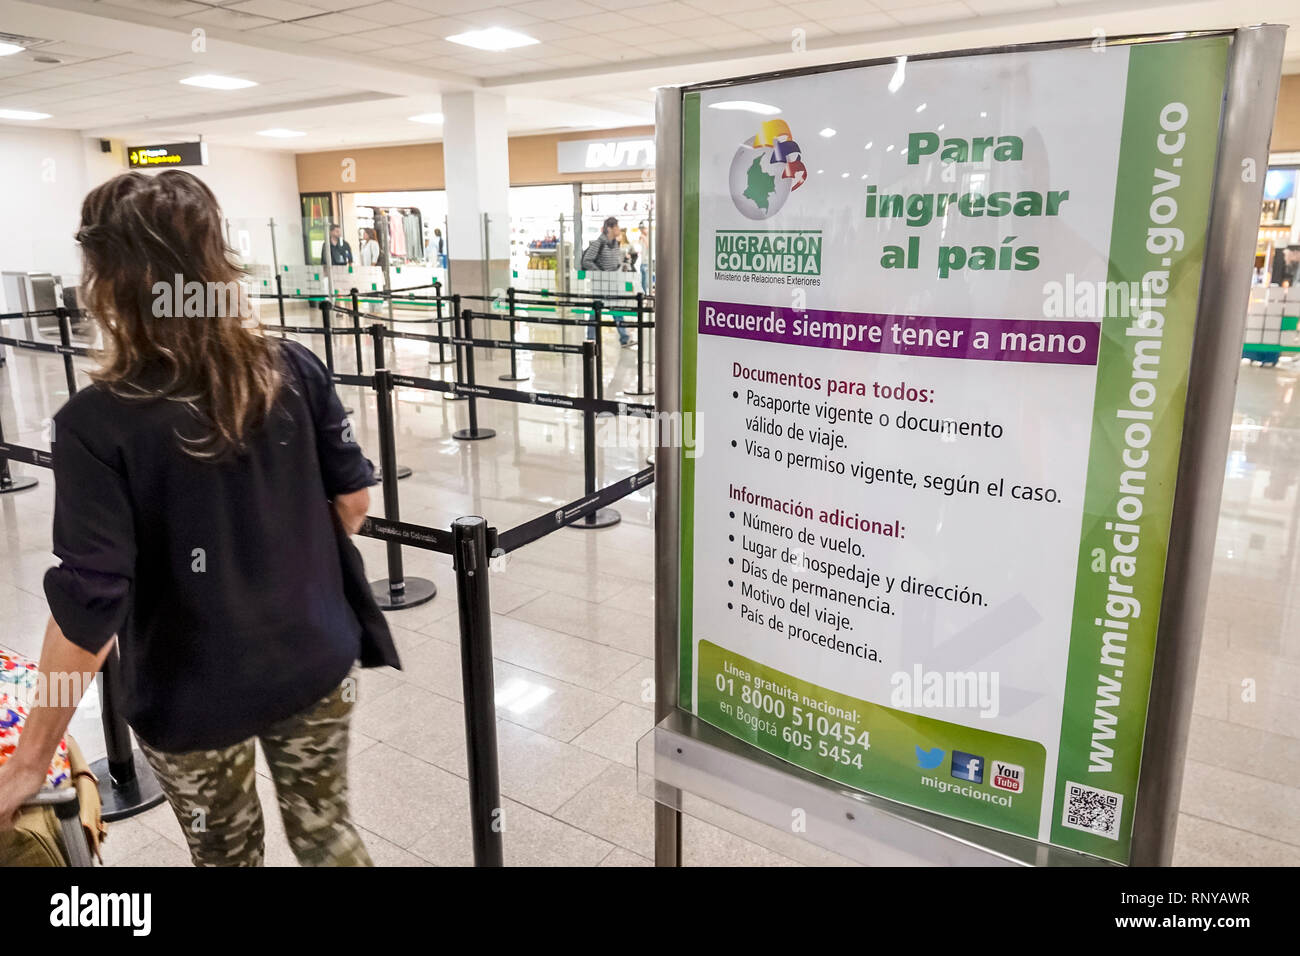 Cartagena Colombia, Aeropuerto Internacional Rafael Nunez Aeroporto, interno, terminal, controllo immigrazione doganale passaporto, lingua spagnola, cartello, a Foto Stock